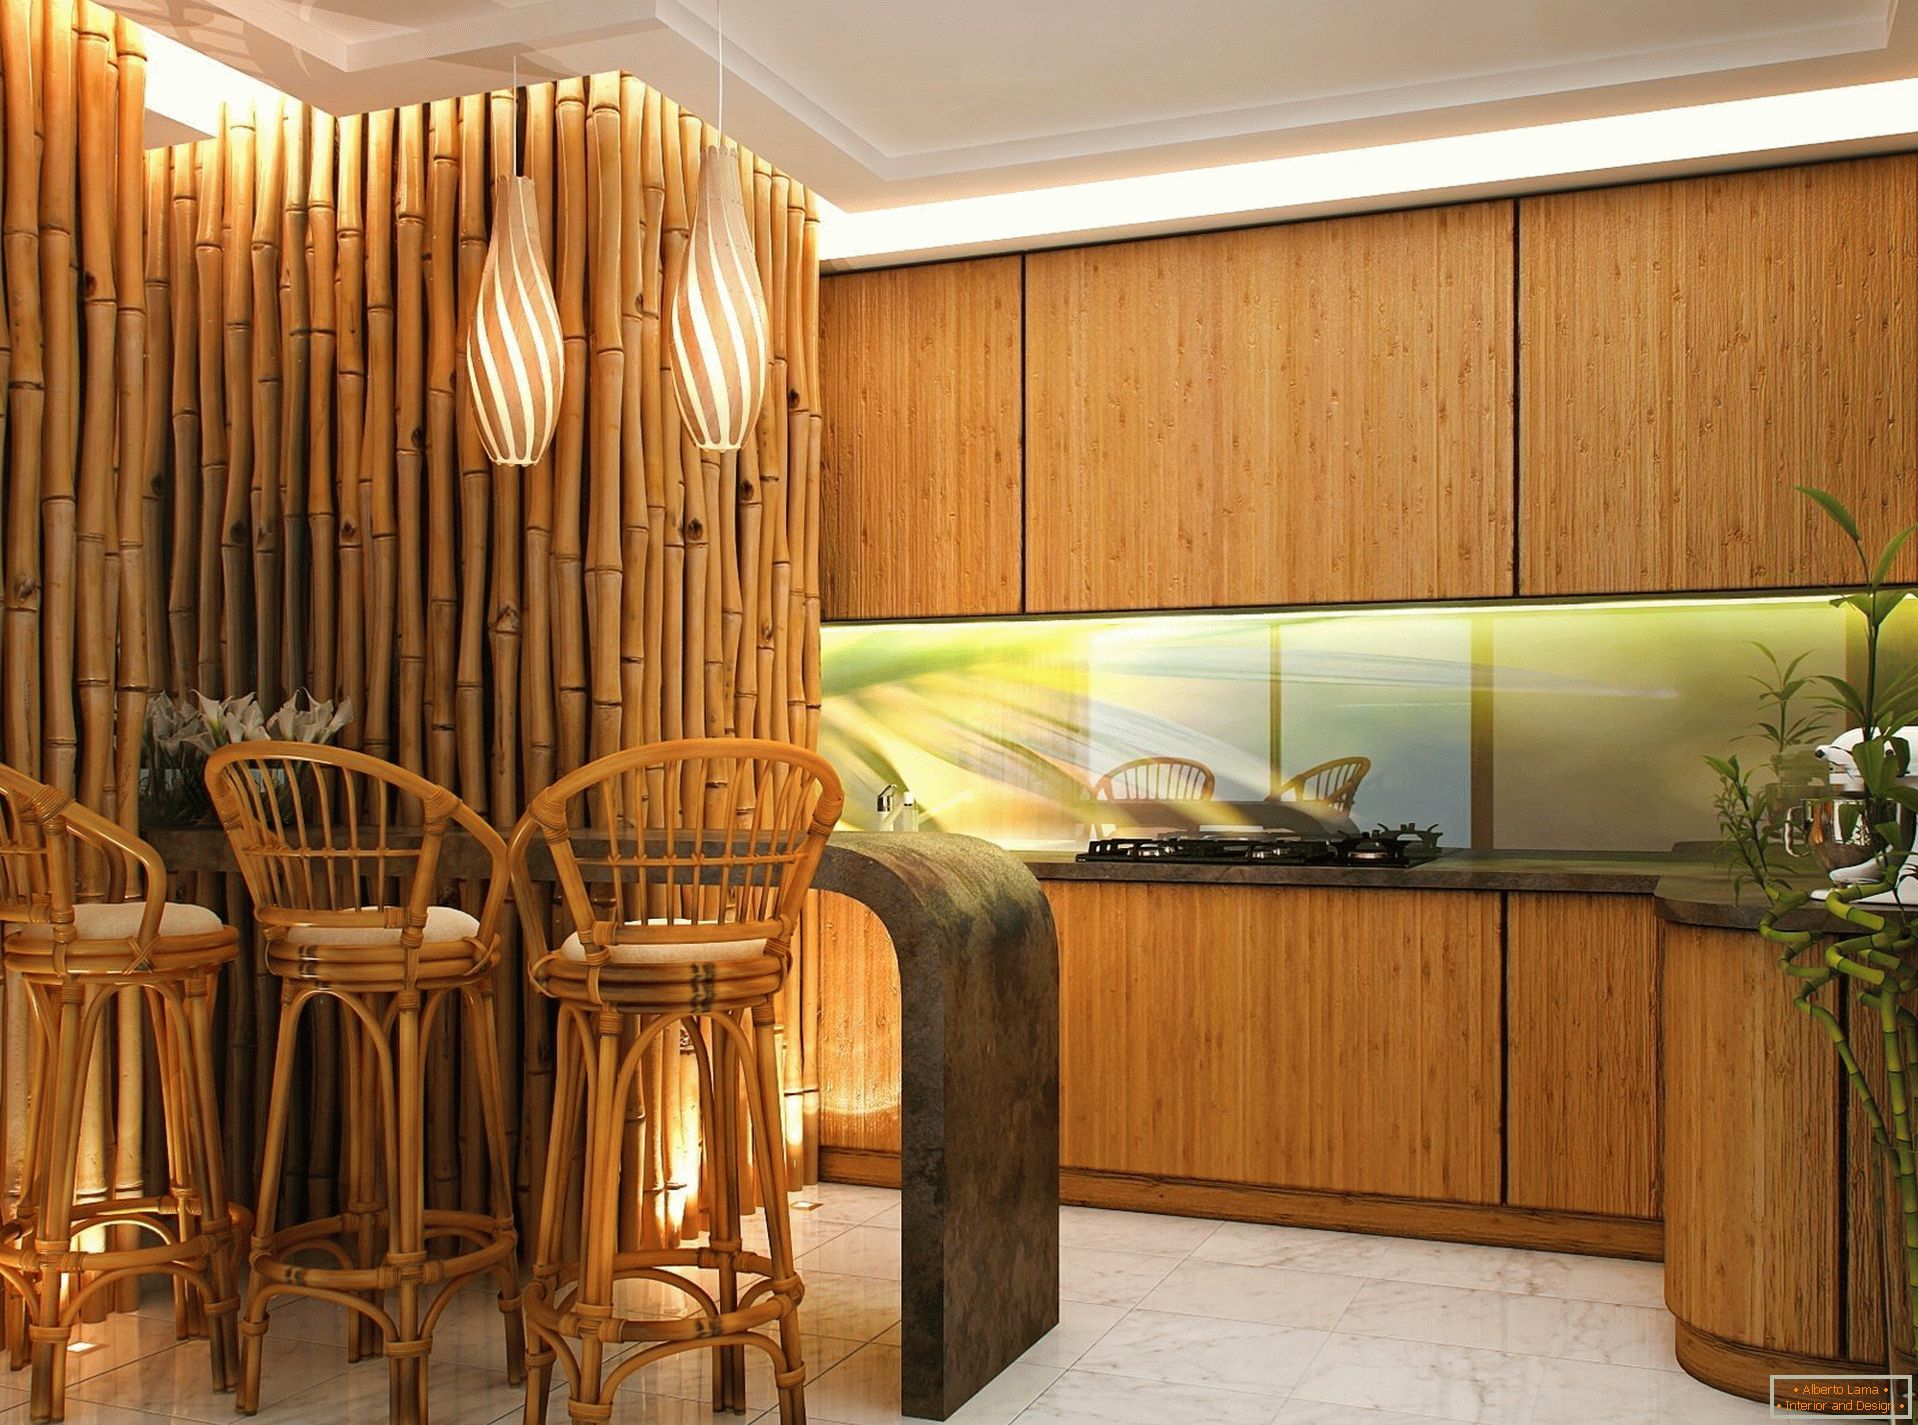 Stěny a židle z bambusu